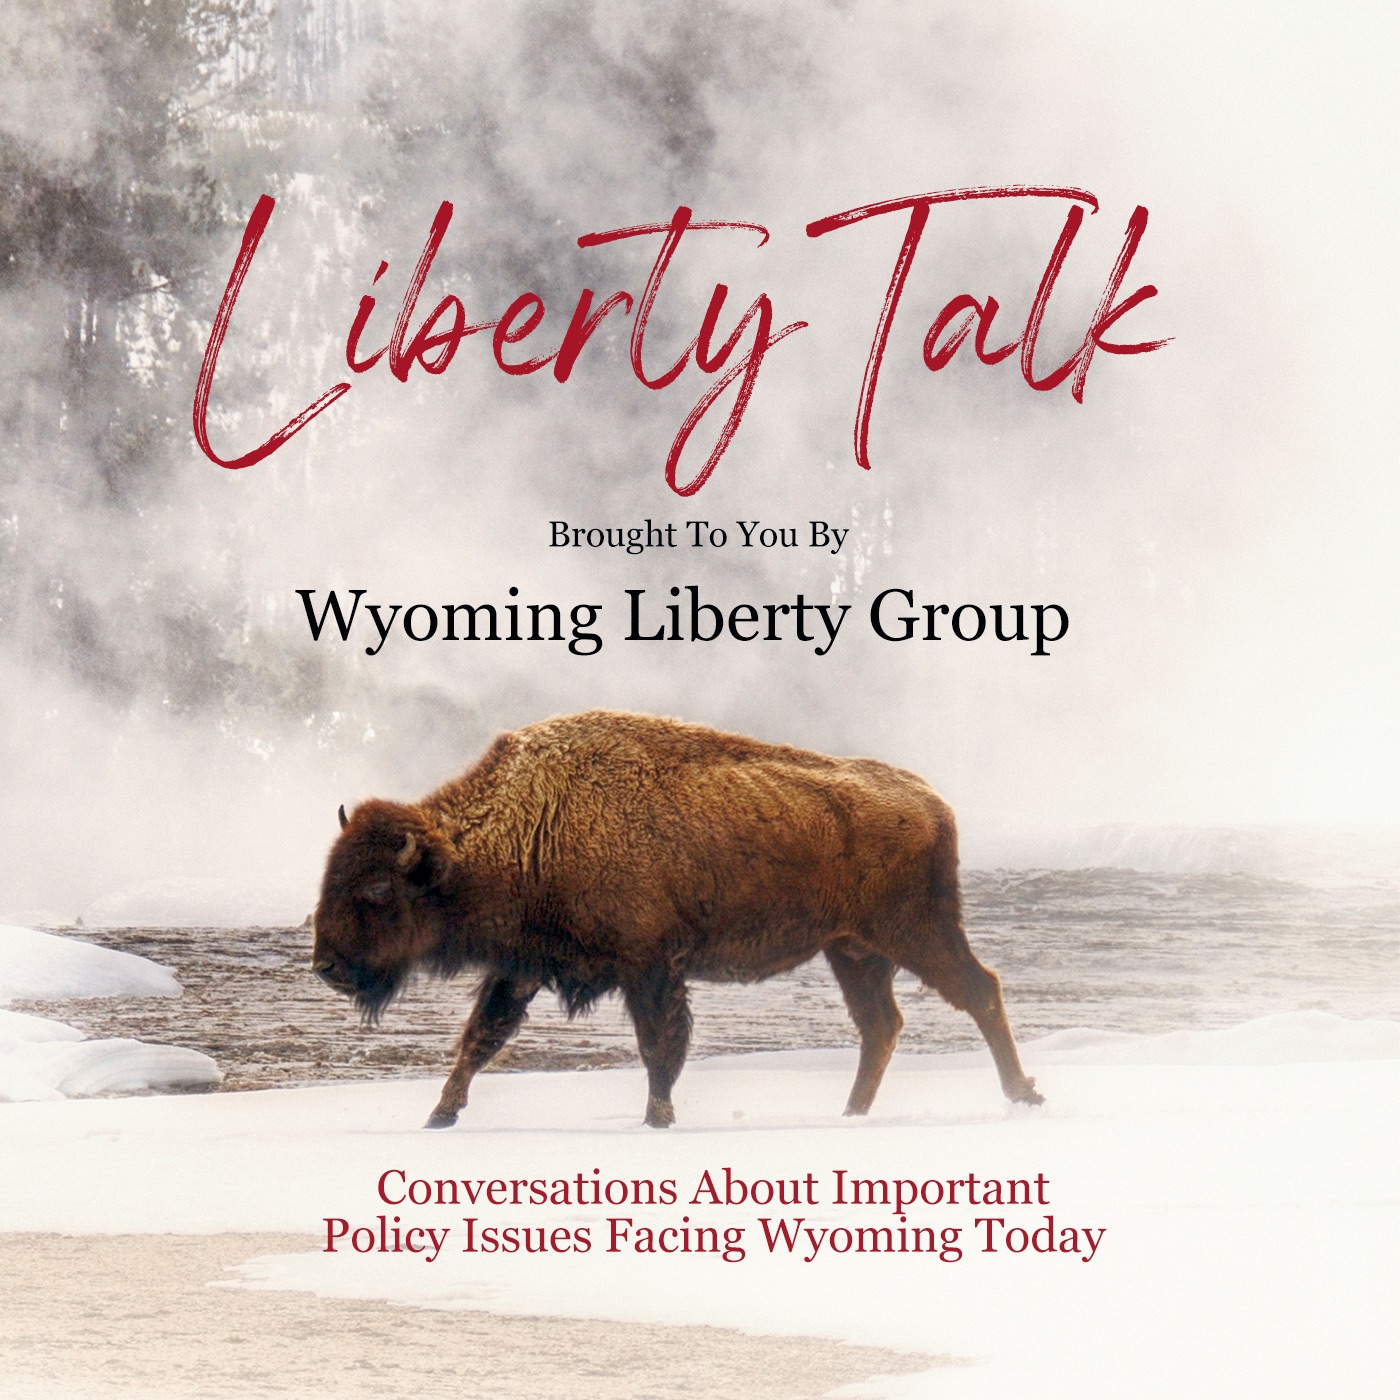 Liberty Talk